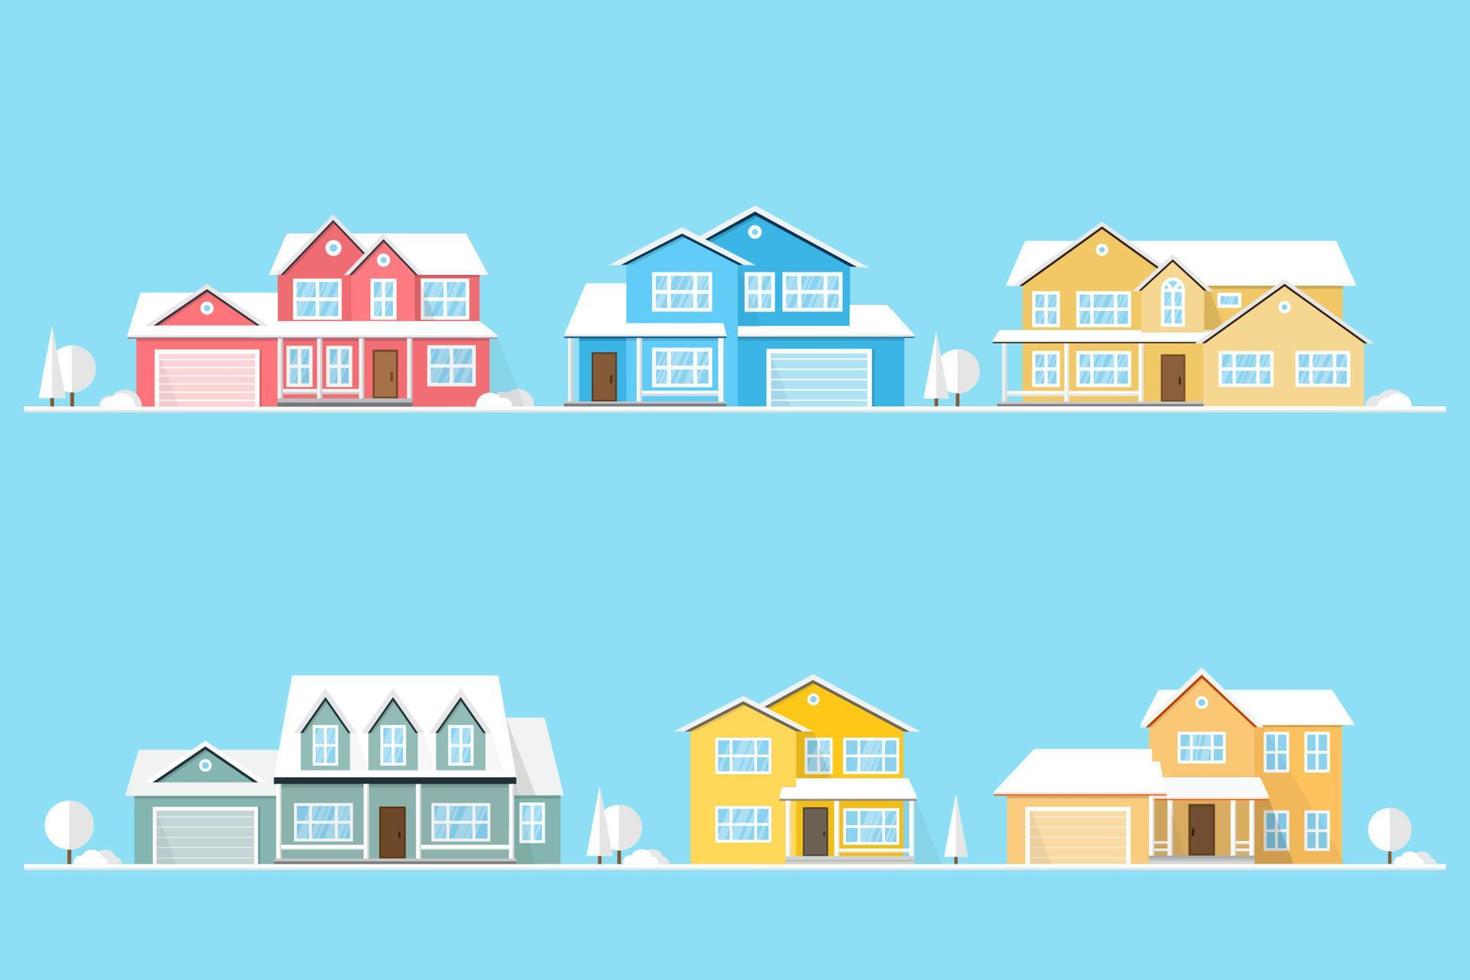 bairro com casas ilustradas em azul. vetor